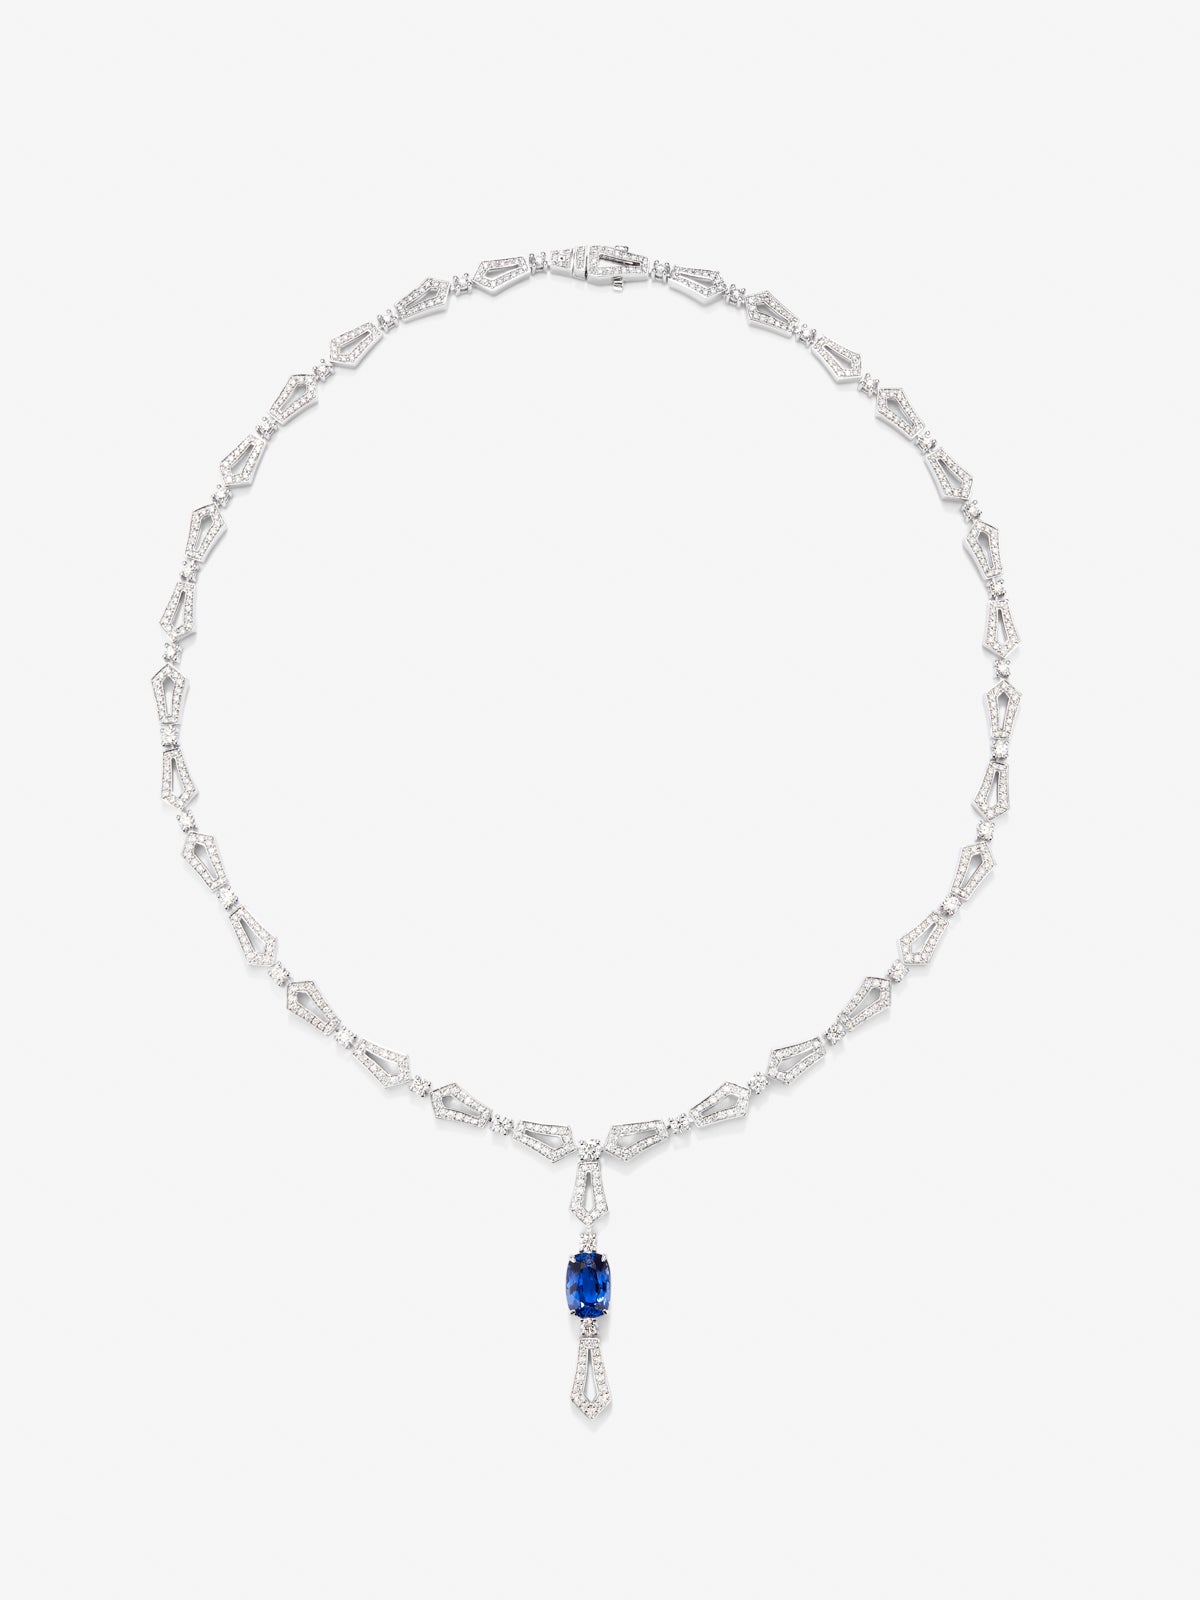 Collar de oro blanco de 18K con zafiro azul en talla cushion de 3,17 cts y diamantes blancos en talla brillante de 4,13 cts